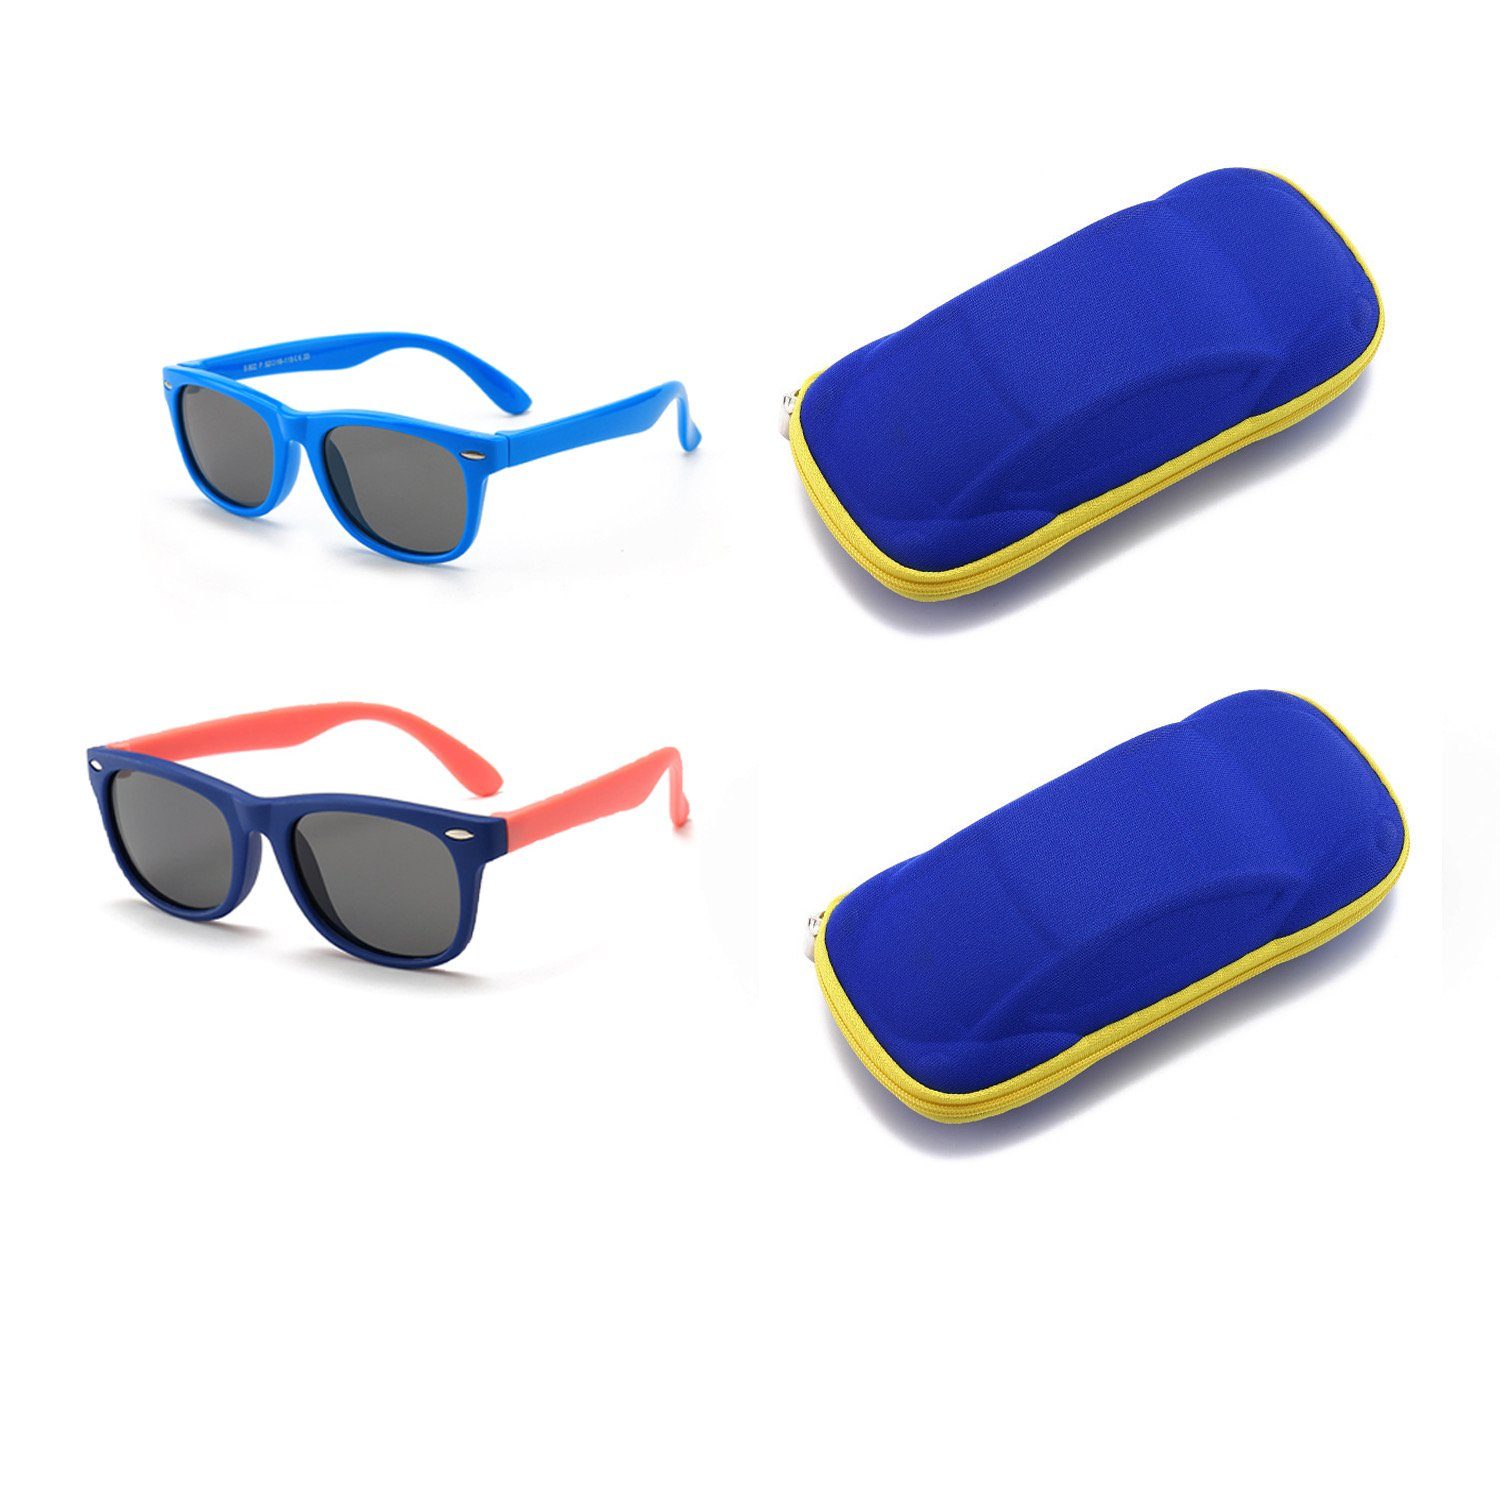 Olotos Sonnenbrille Sonnenbrille für Kinder Mädchen Jungen Gummi 100% UV400 Schutz Brille Blau+Dunkelblau mit Brillenetui